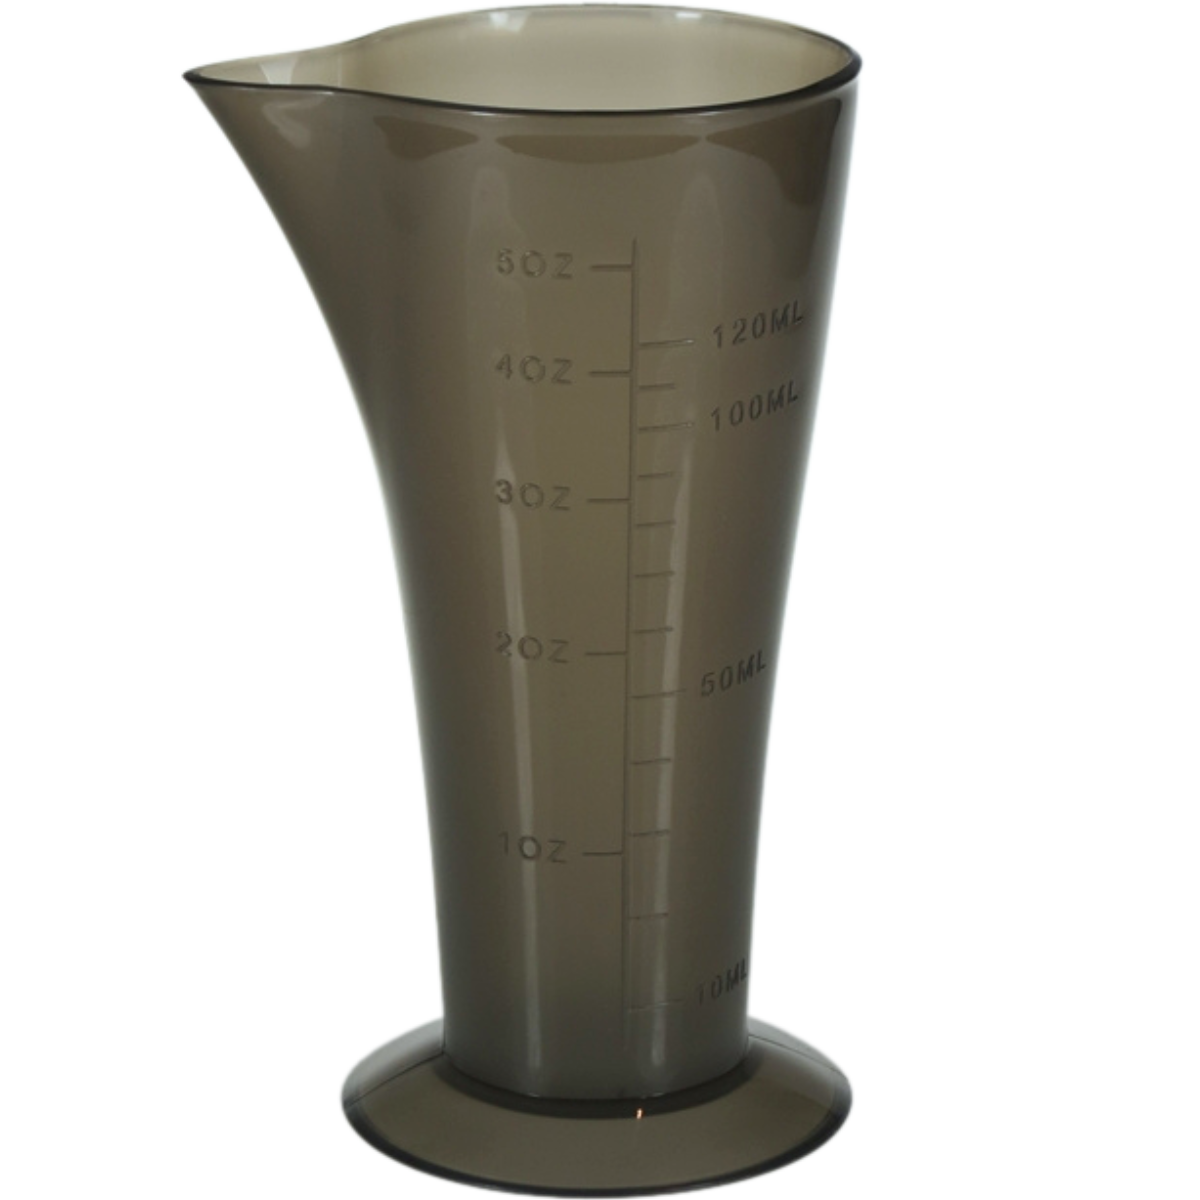 כוס מידה למדידת כמות קרם חמצן